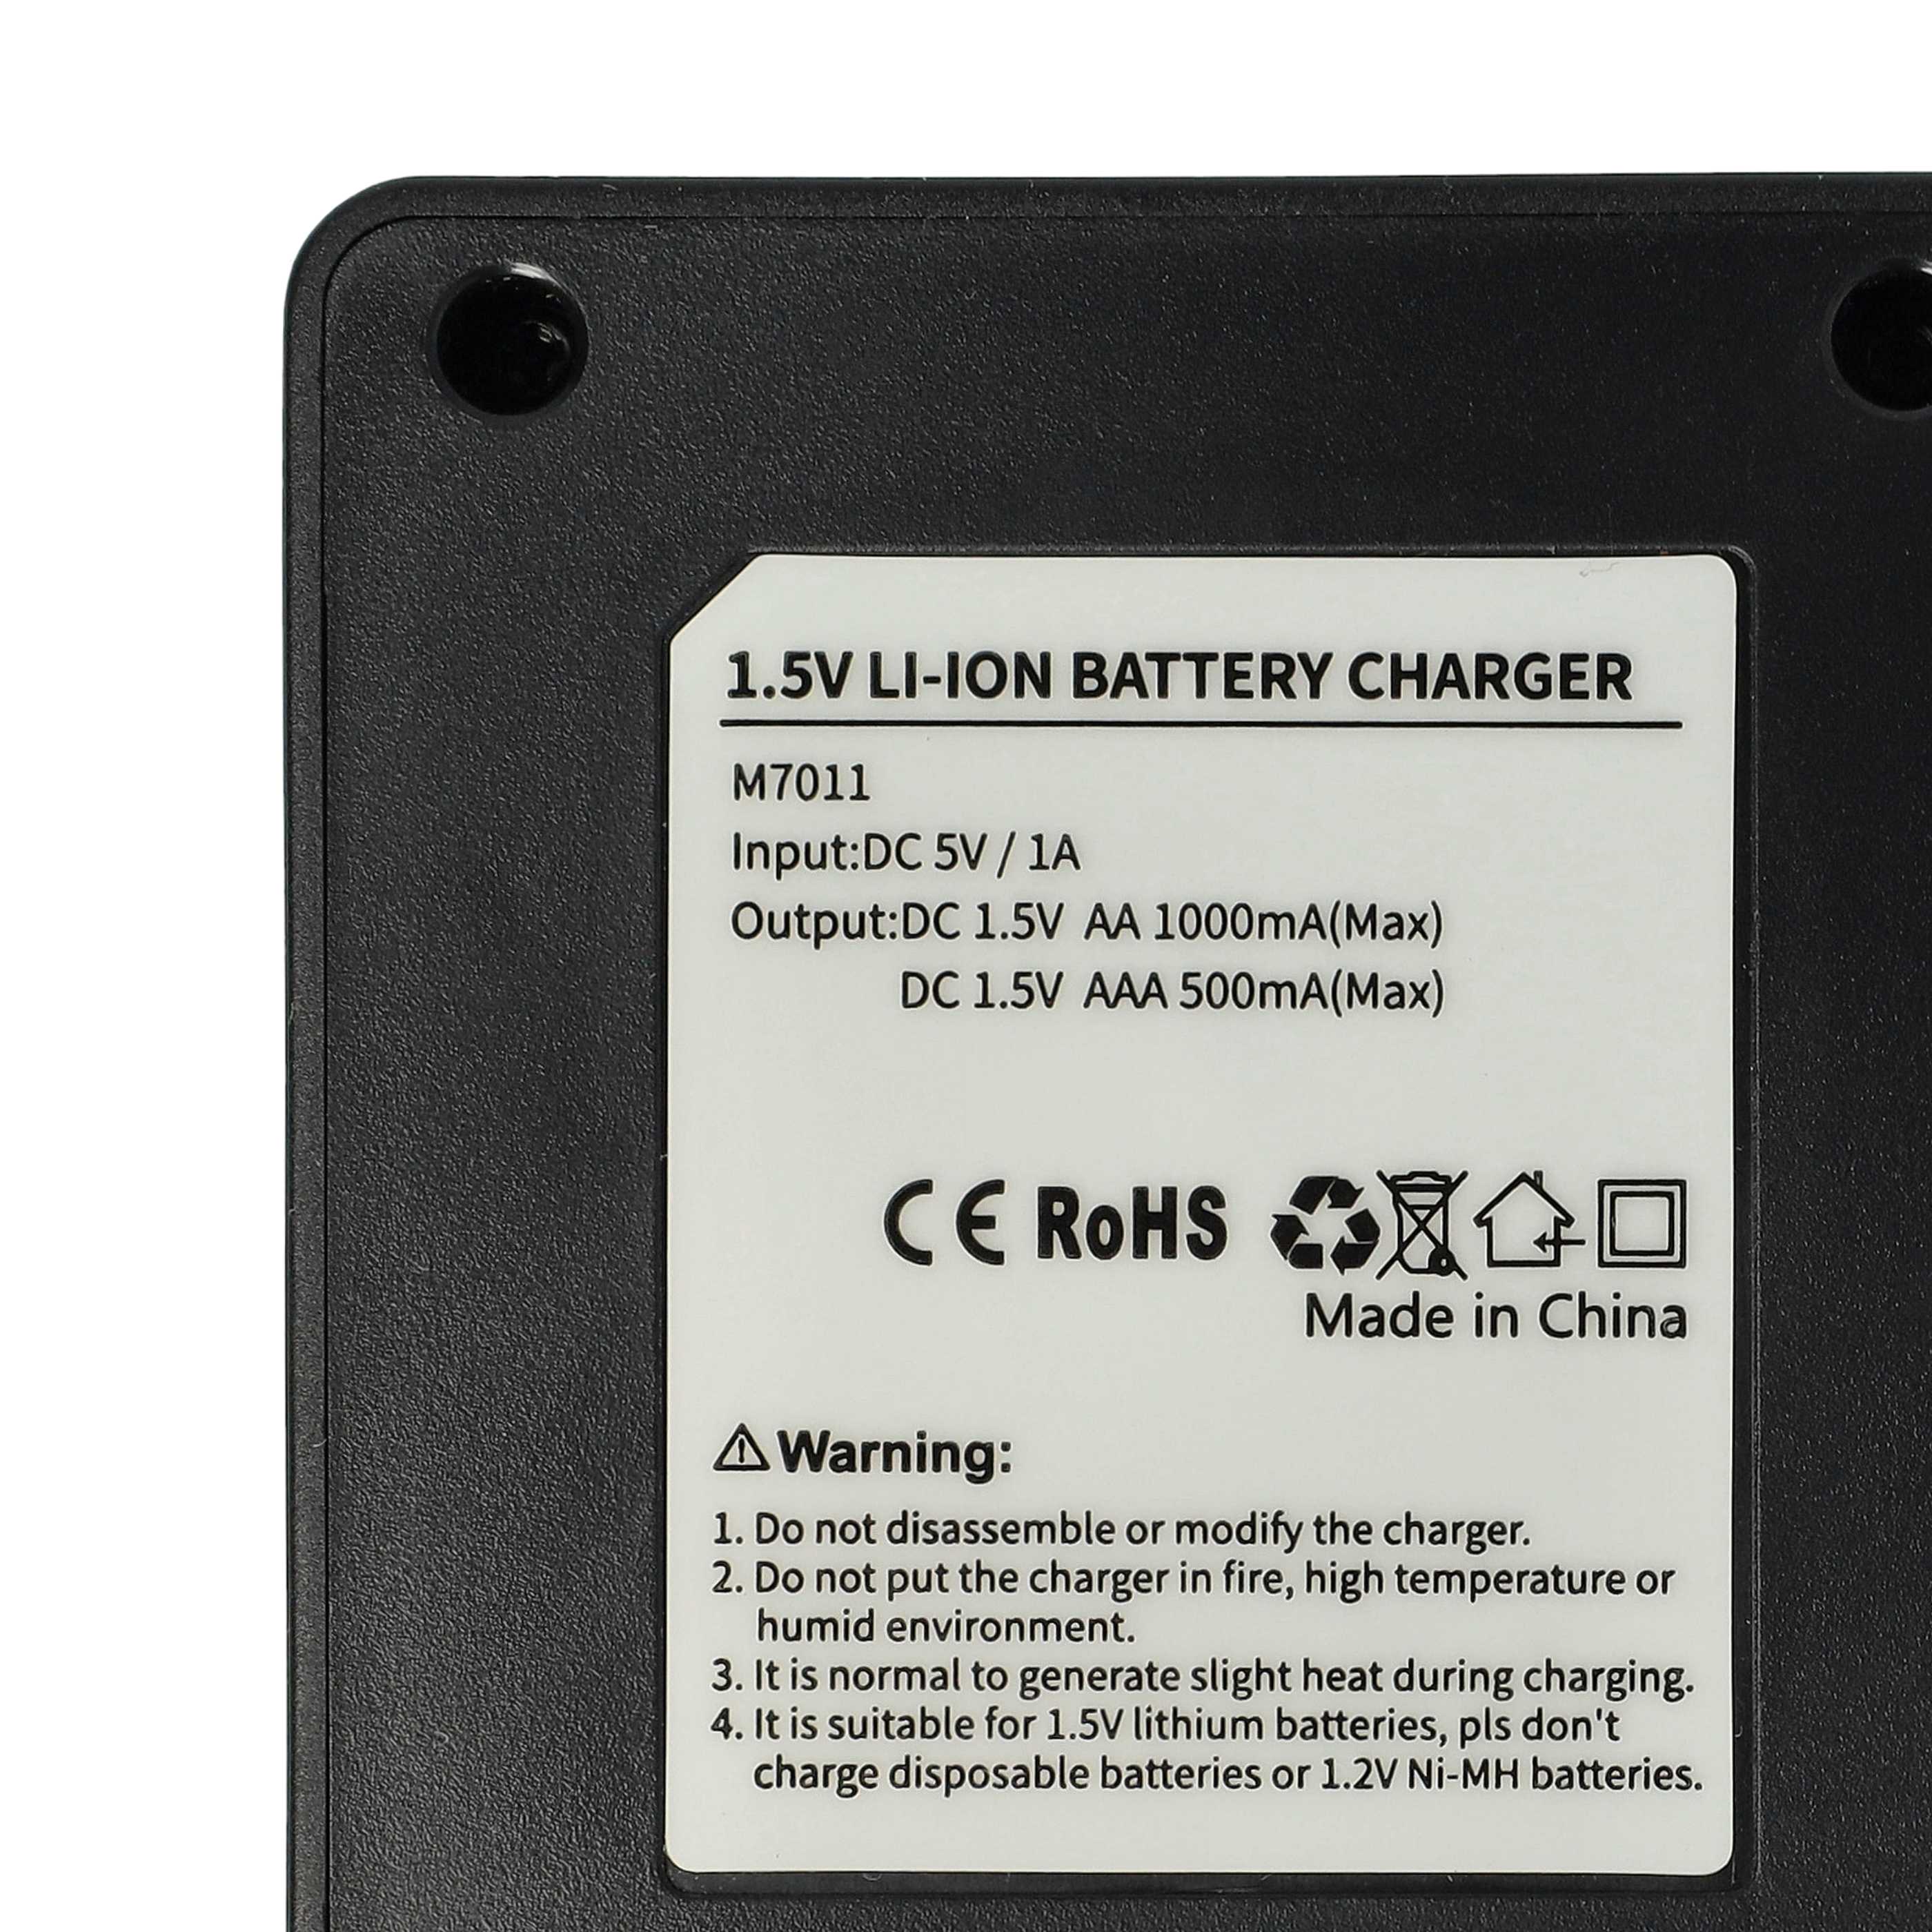 Cargador micro-USB 4 compartimentos para baterías, celdas AA, AAA Li-Ion 